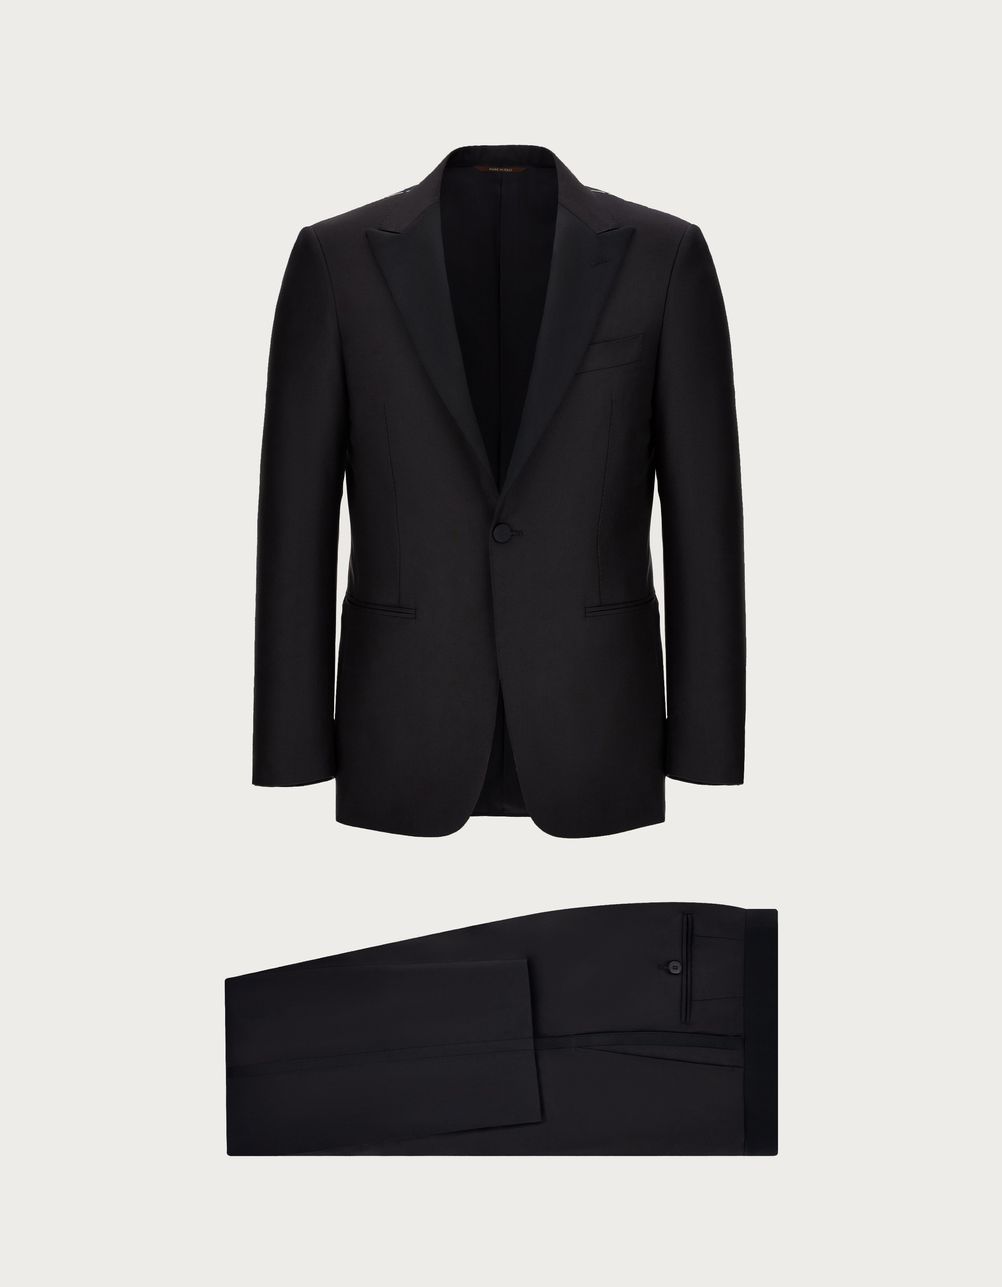 Black tuxedo in 150's wool - Exclusive